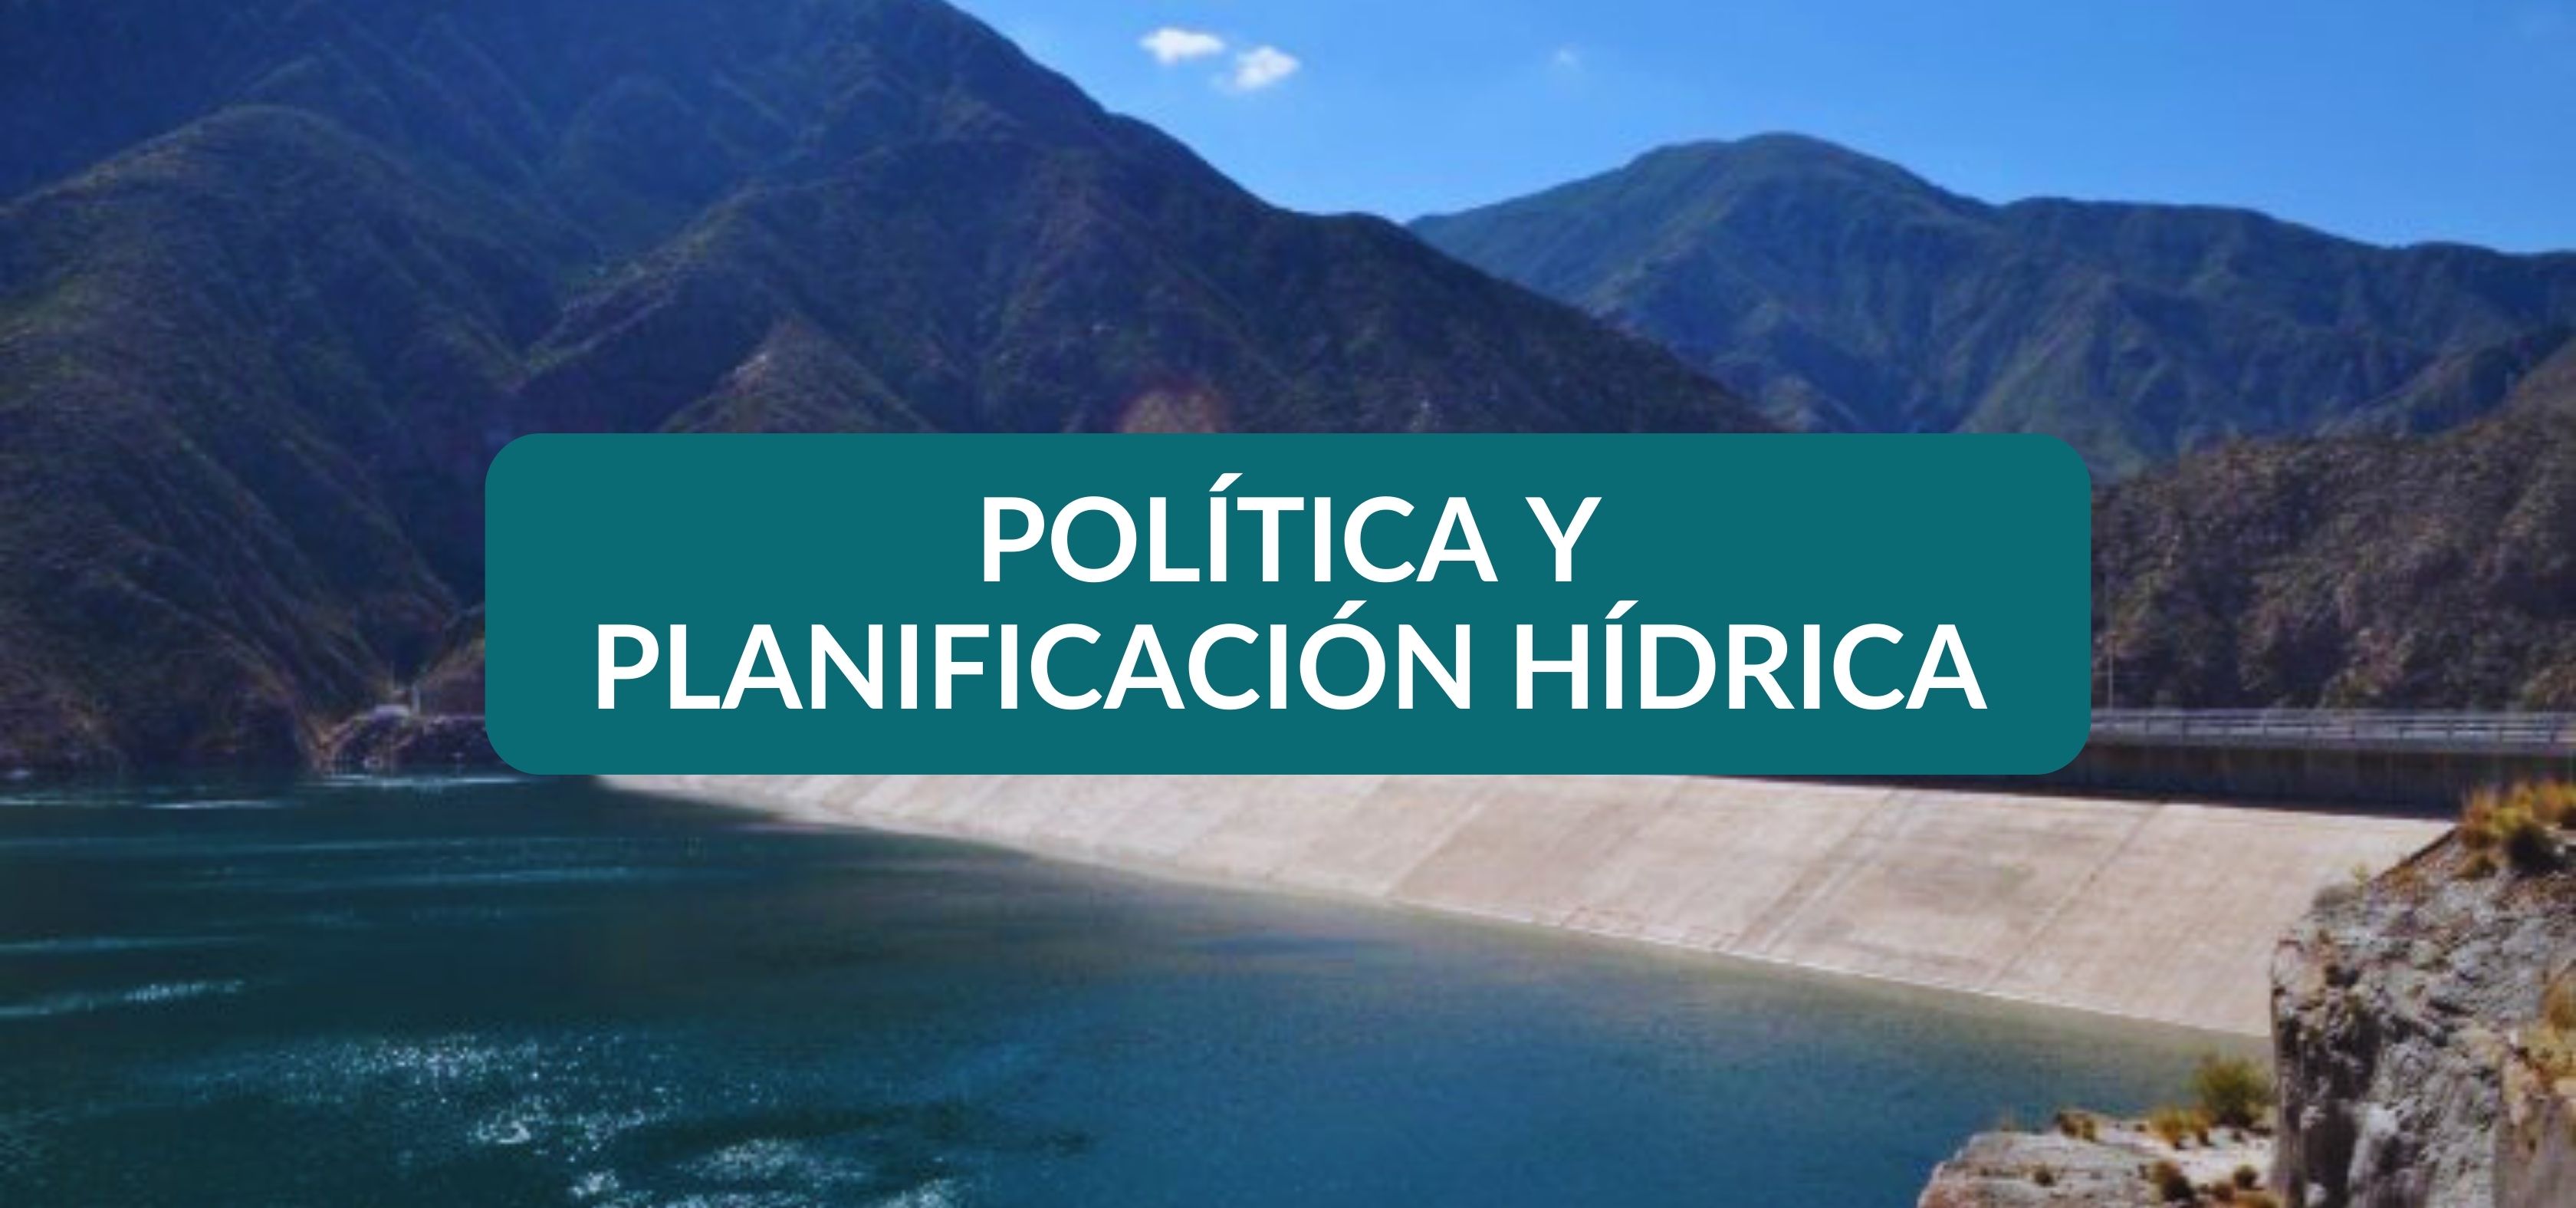 Título II. Política y planificación hídrica